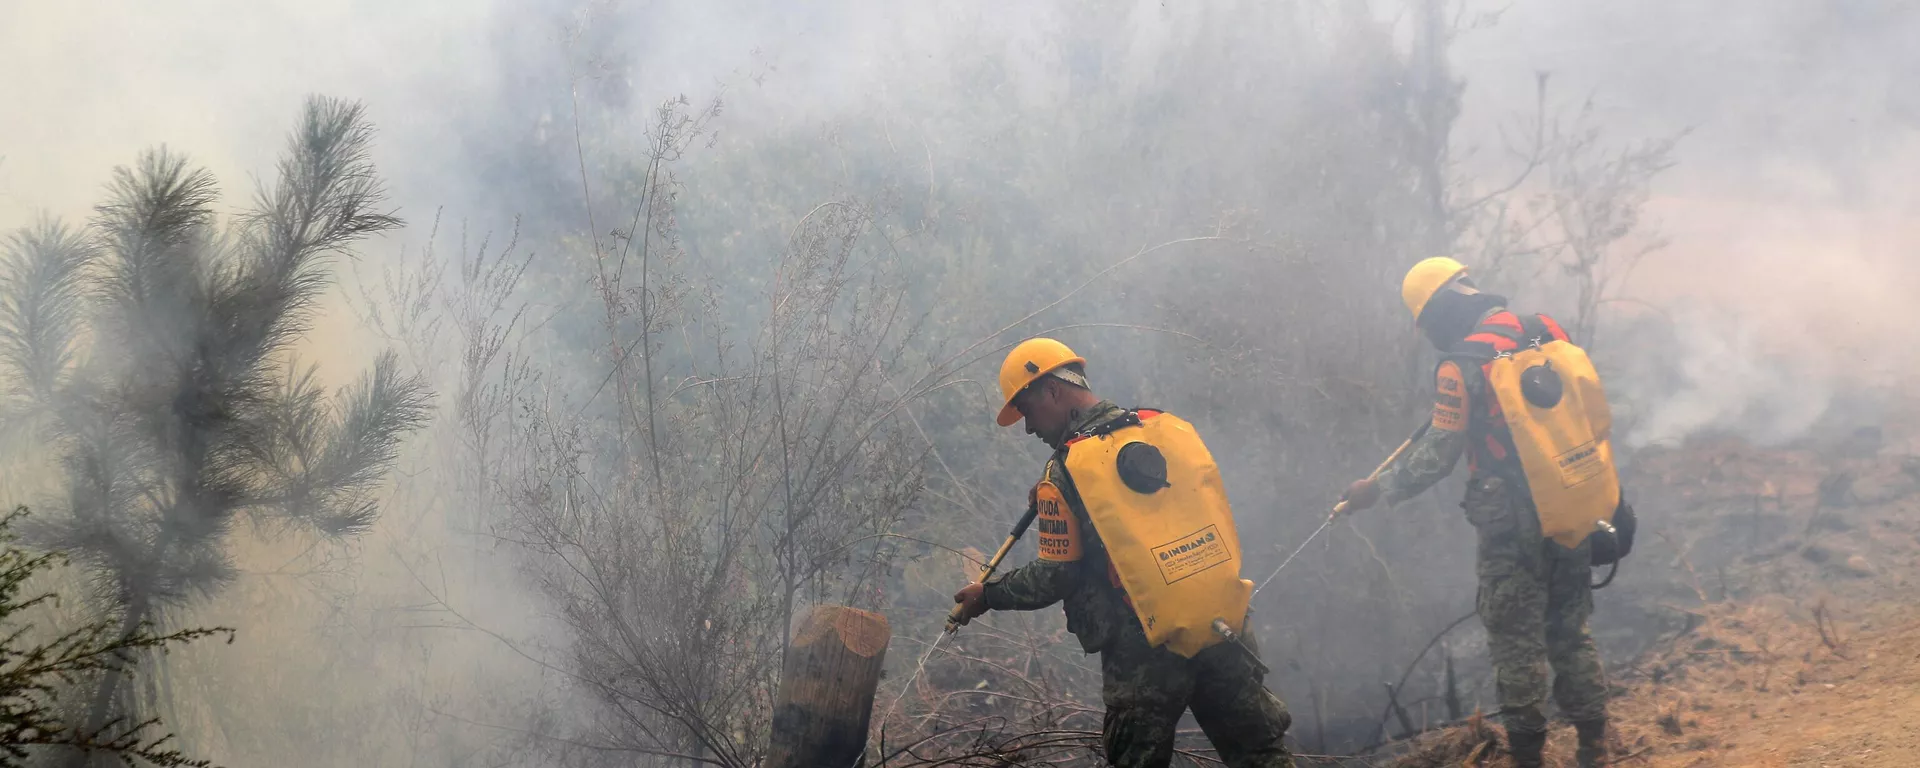 Miembros de la Unidad Militar Mexicana combaten incendios forestales en Santa Juana, Provincia de Concepción, en Chile, el 8 de febrero de 2023 - Sputnik Mundo, 1920, 13.02.2023